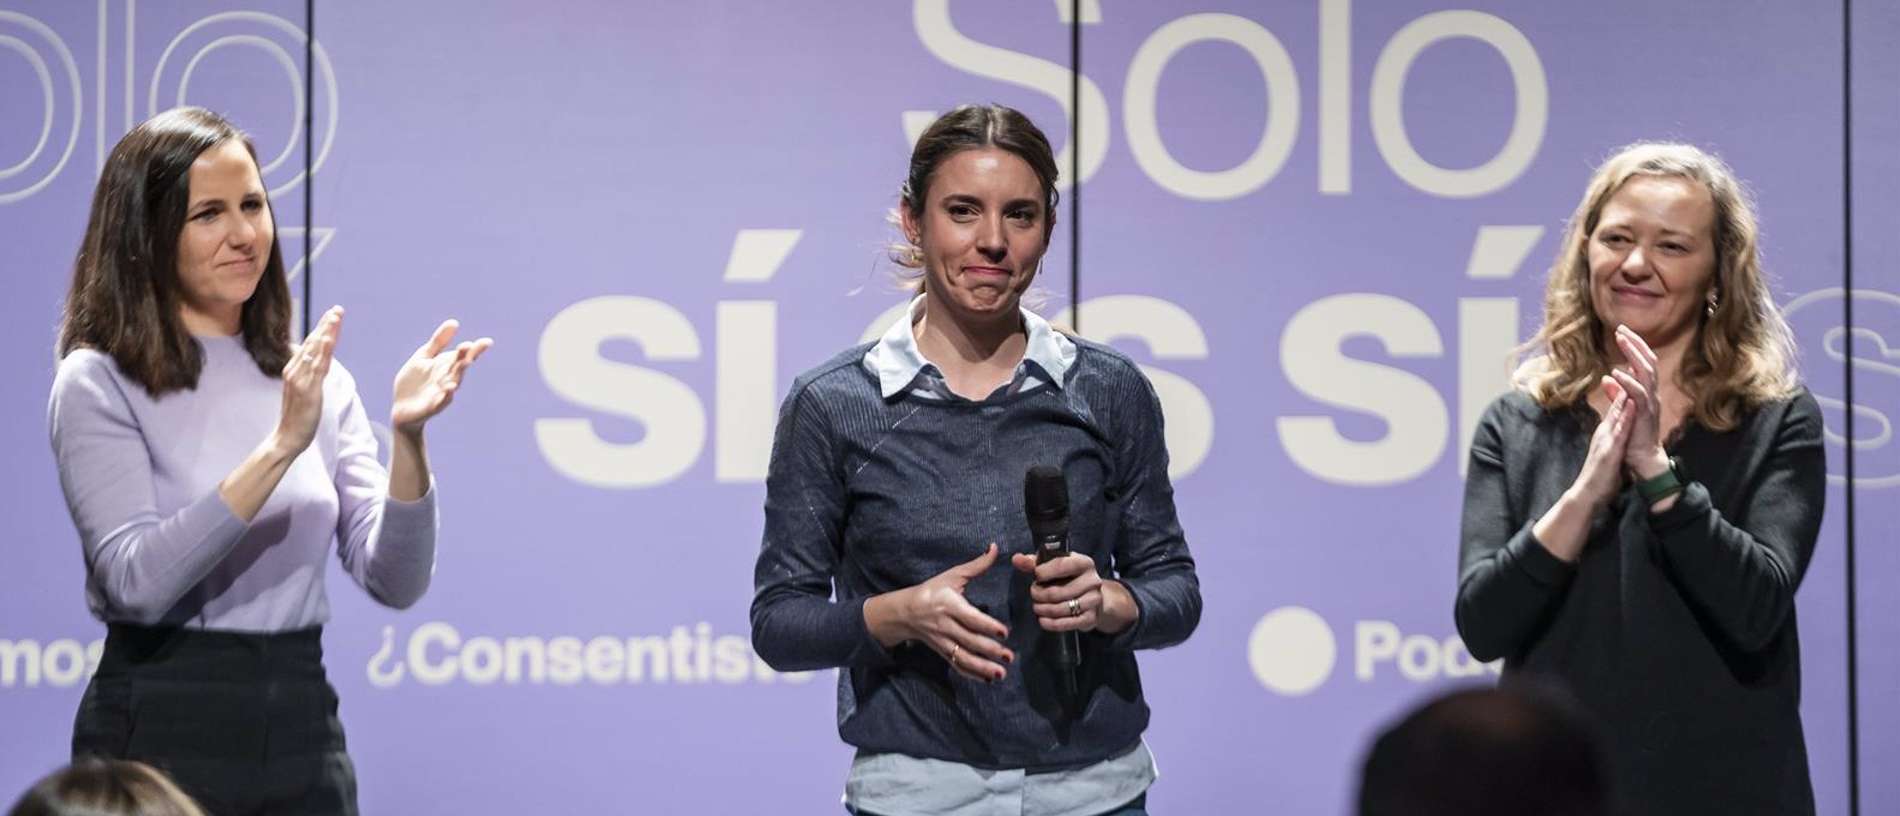 La secretaria de Acción de Gobierno de Podemos y ministra de Igualdad, Irene Montero, interviene durante el acto '¿Consentiste o no? Solo sí es sí'.